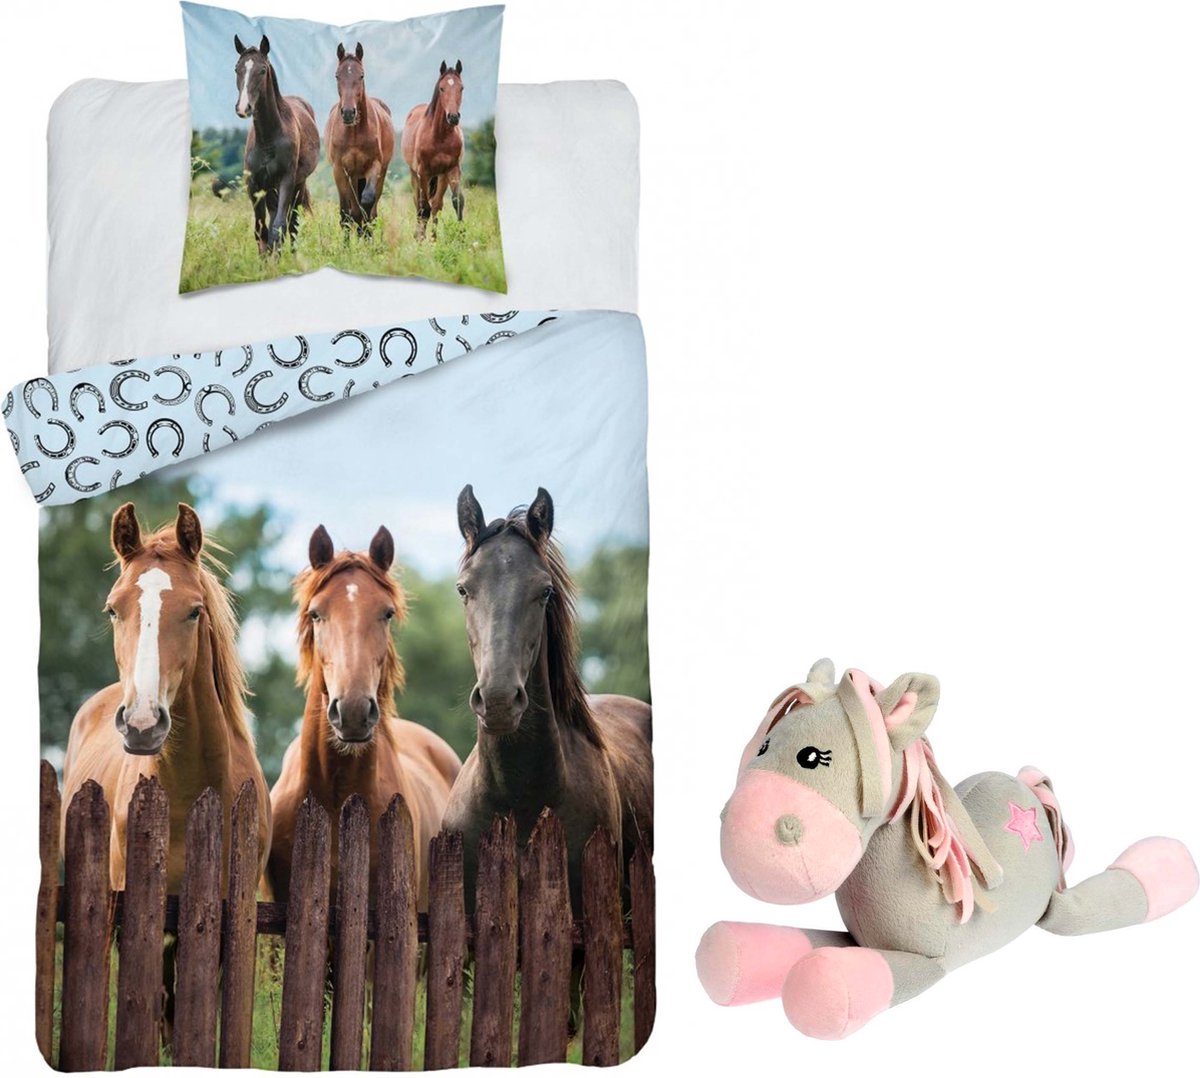 Dekbedovertrek 3 Paarden- 1 persoons- 140x200- Katoen- dekbed paard- 3 Horses, incl. Pluche Paardje 25 cm grijs-roze